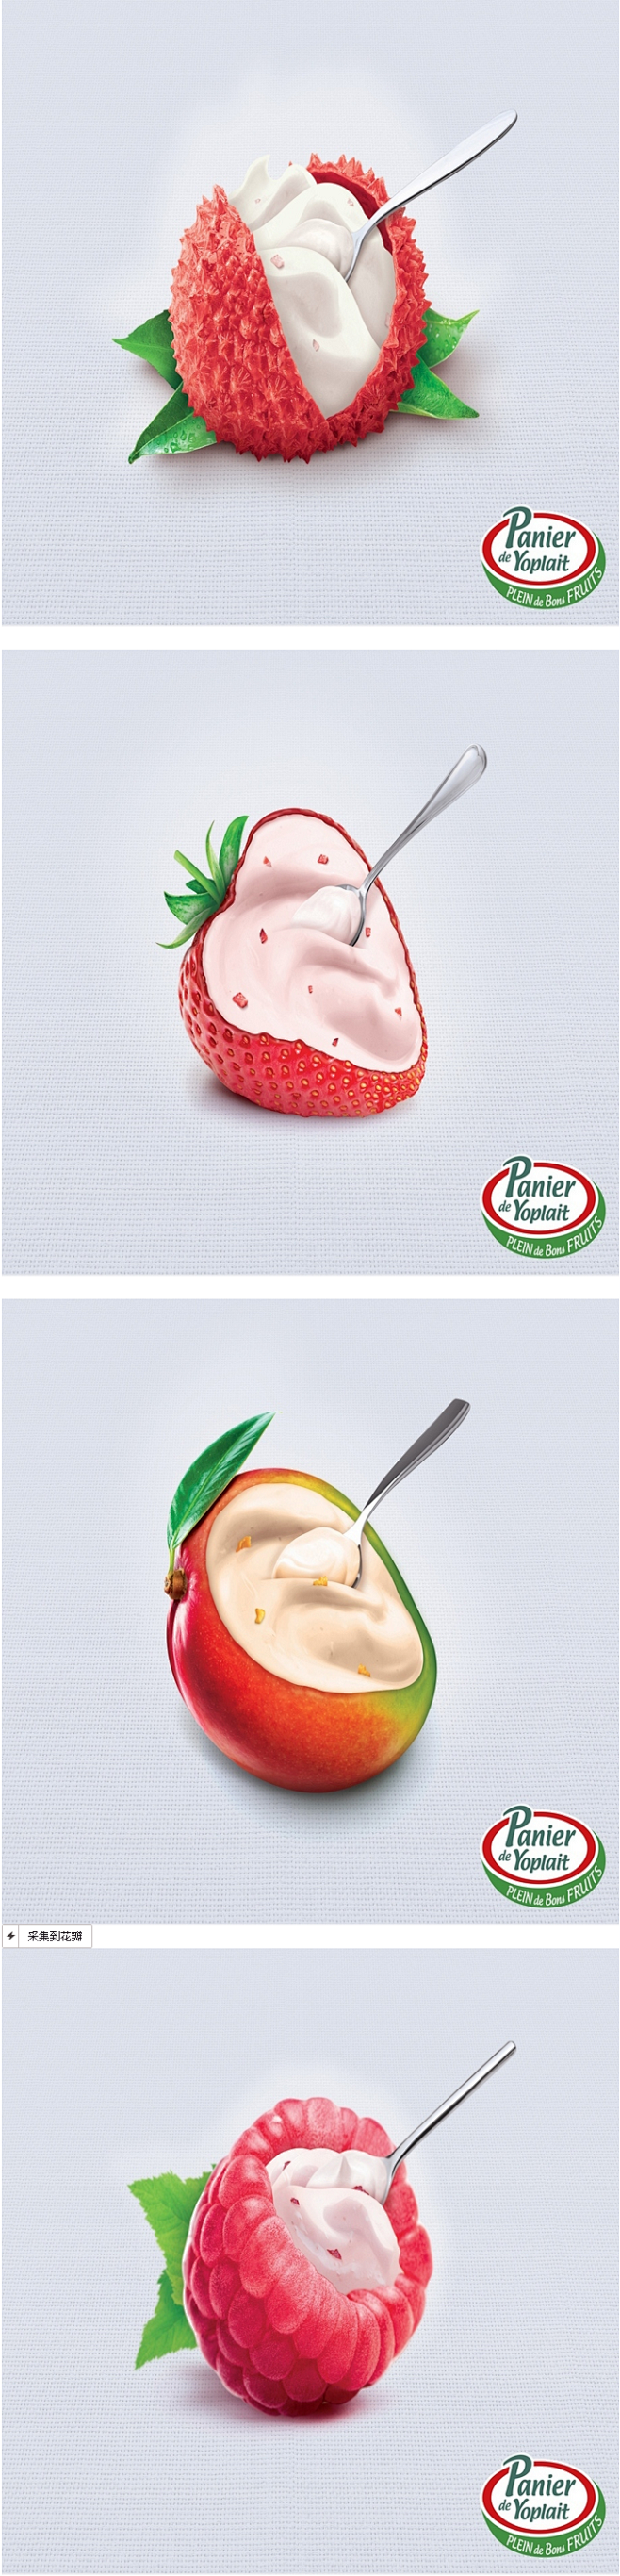 法国著名的优酪品牌Yoplait平面广告...